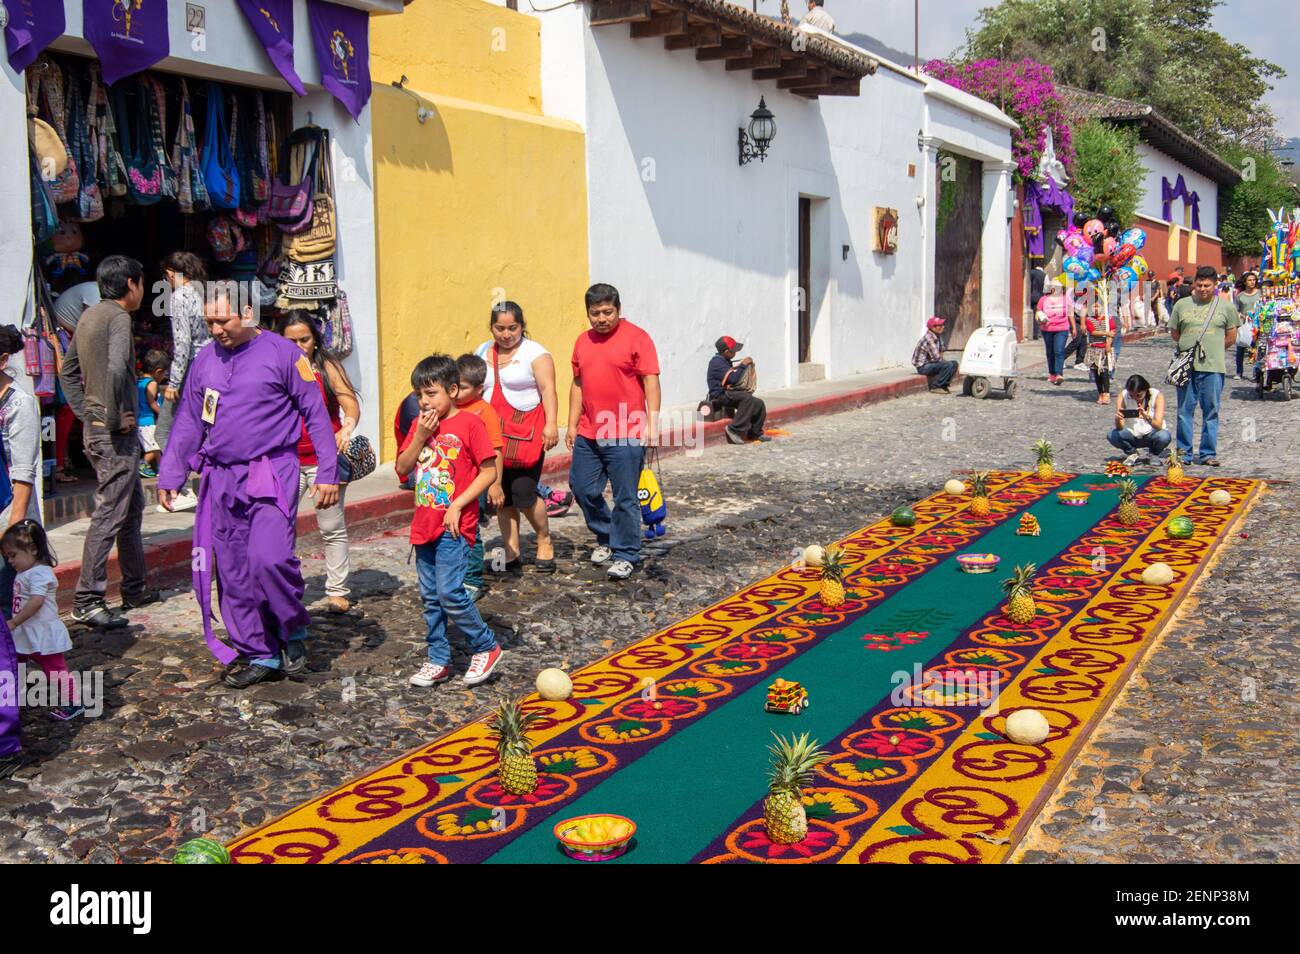 The Holy Week / Semana Santa celebrations in Antigua, Guatemala Stock Photo